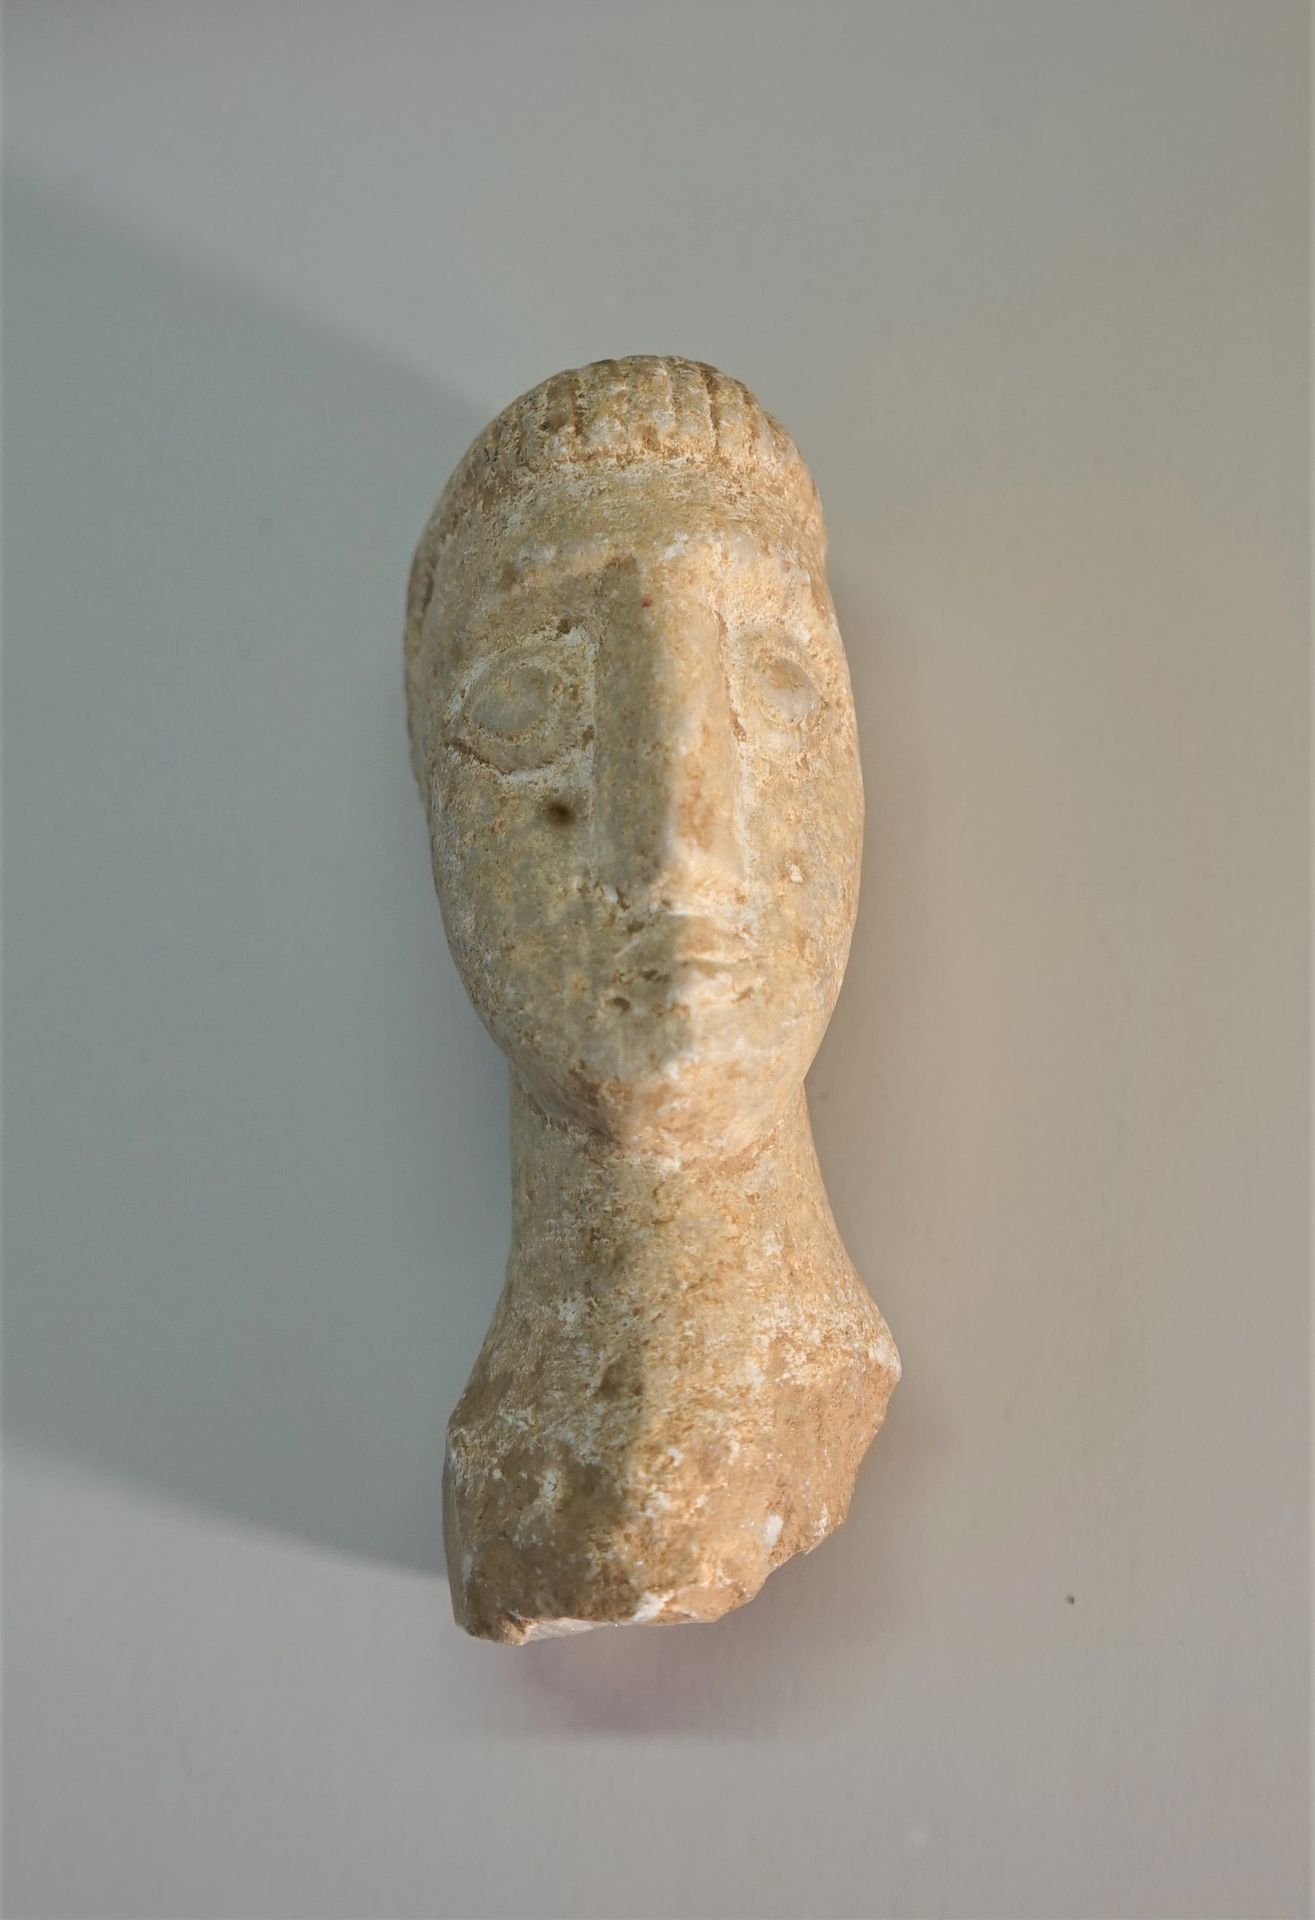 Null Cabeza de piedra blanca (mármol) de estilo celta

11cm